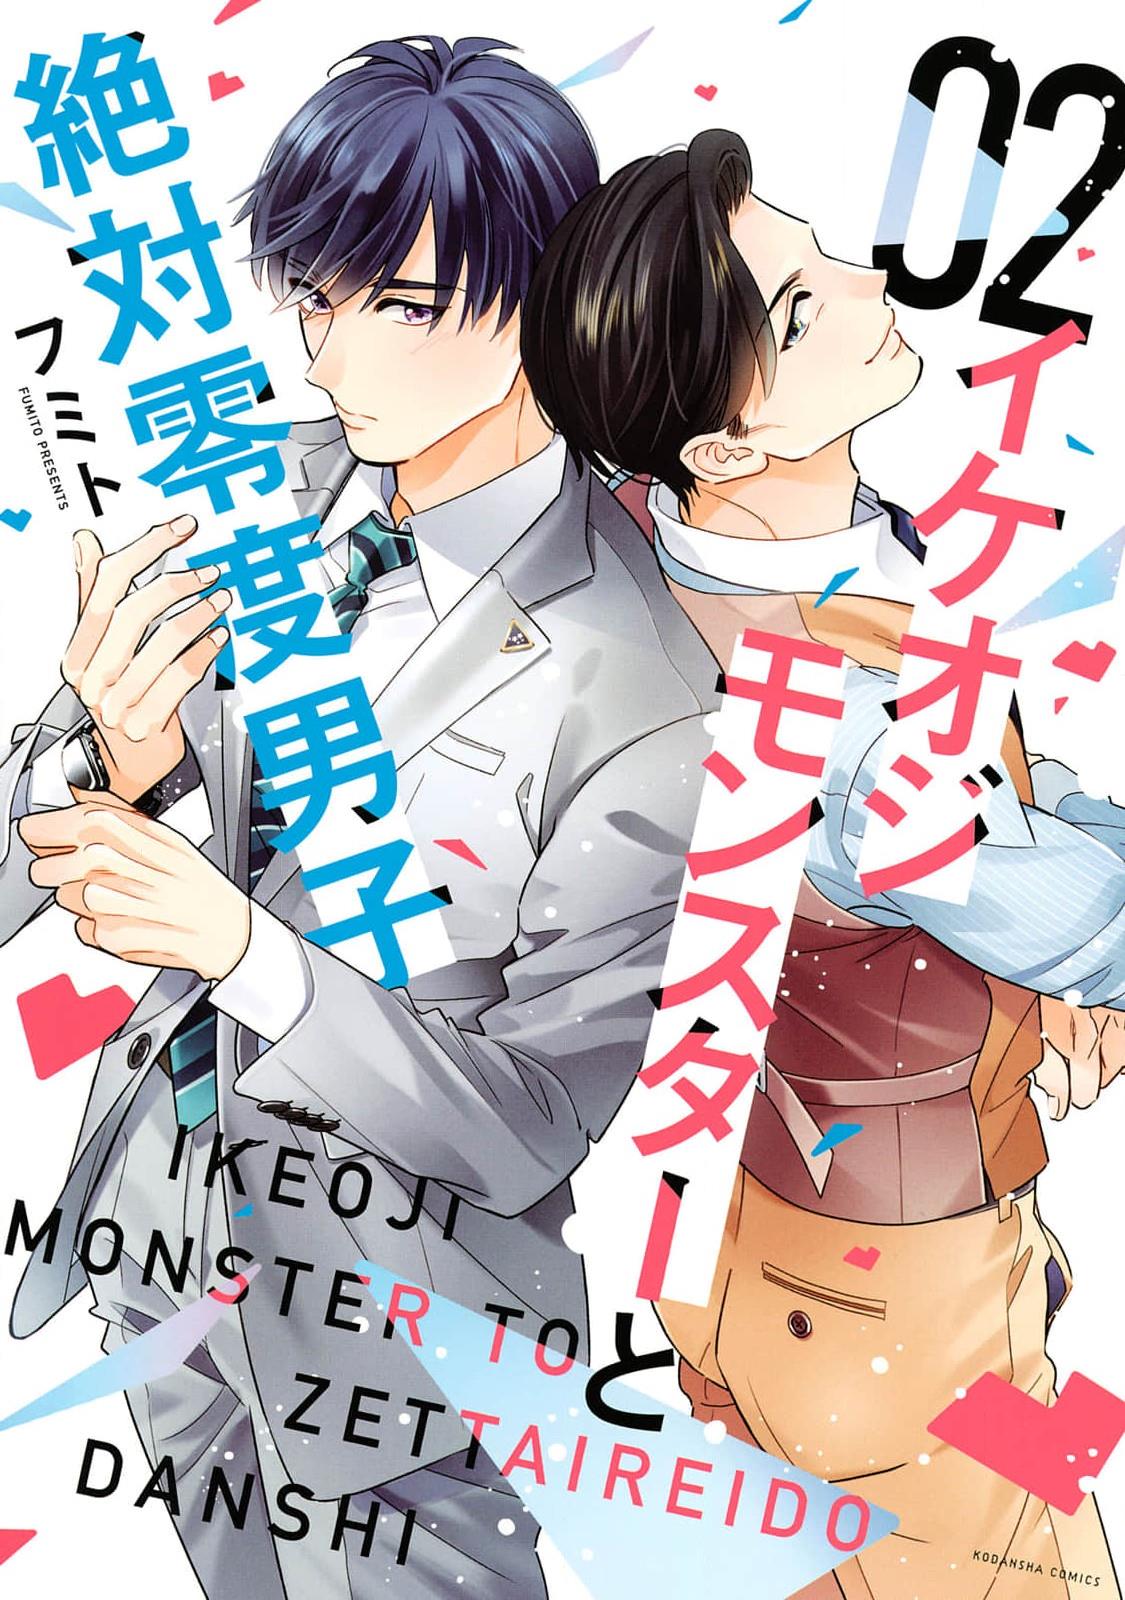 Ikeoji Monster To Zettai Reido Danshi Vol.2 Chapter 6 - Picture 1